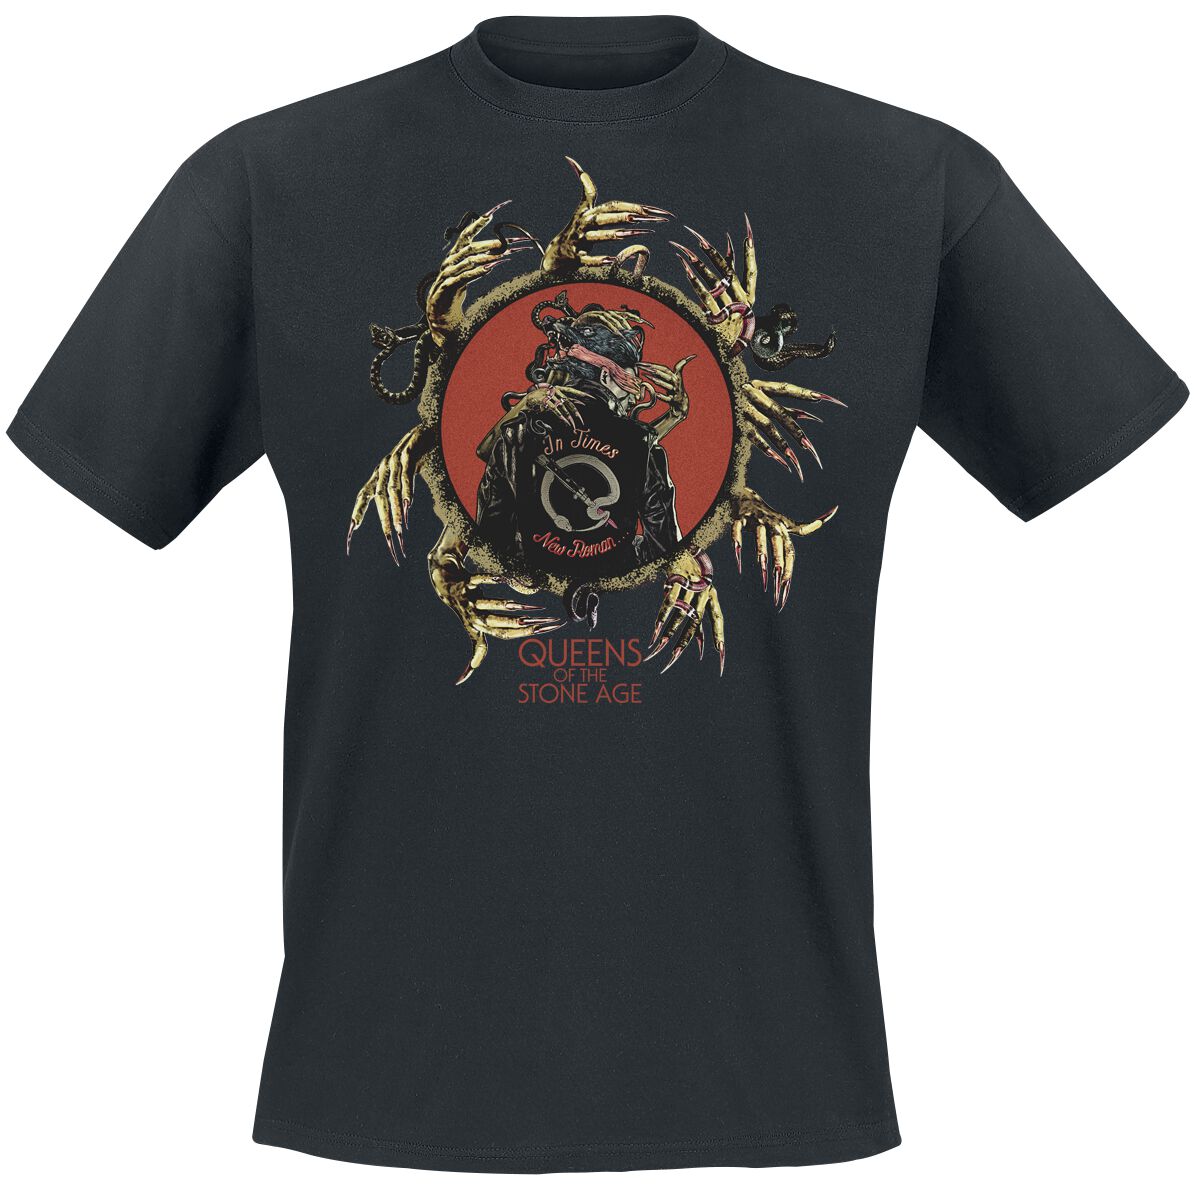 Queens Of The Stone Age T-Shirt - In Times New Roman - Circle Hands - S bis 3XL - für Männer - Größe S - schwarz  - Lizenziertes Merchandise!